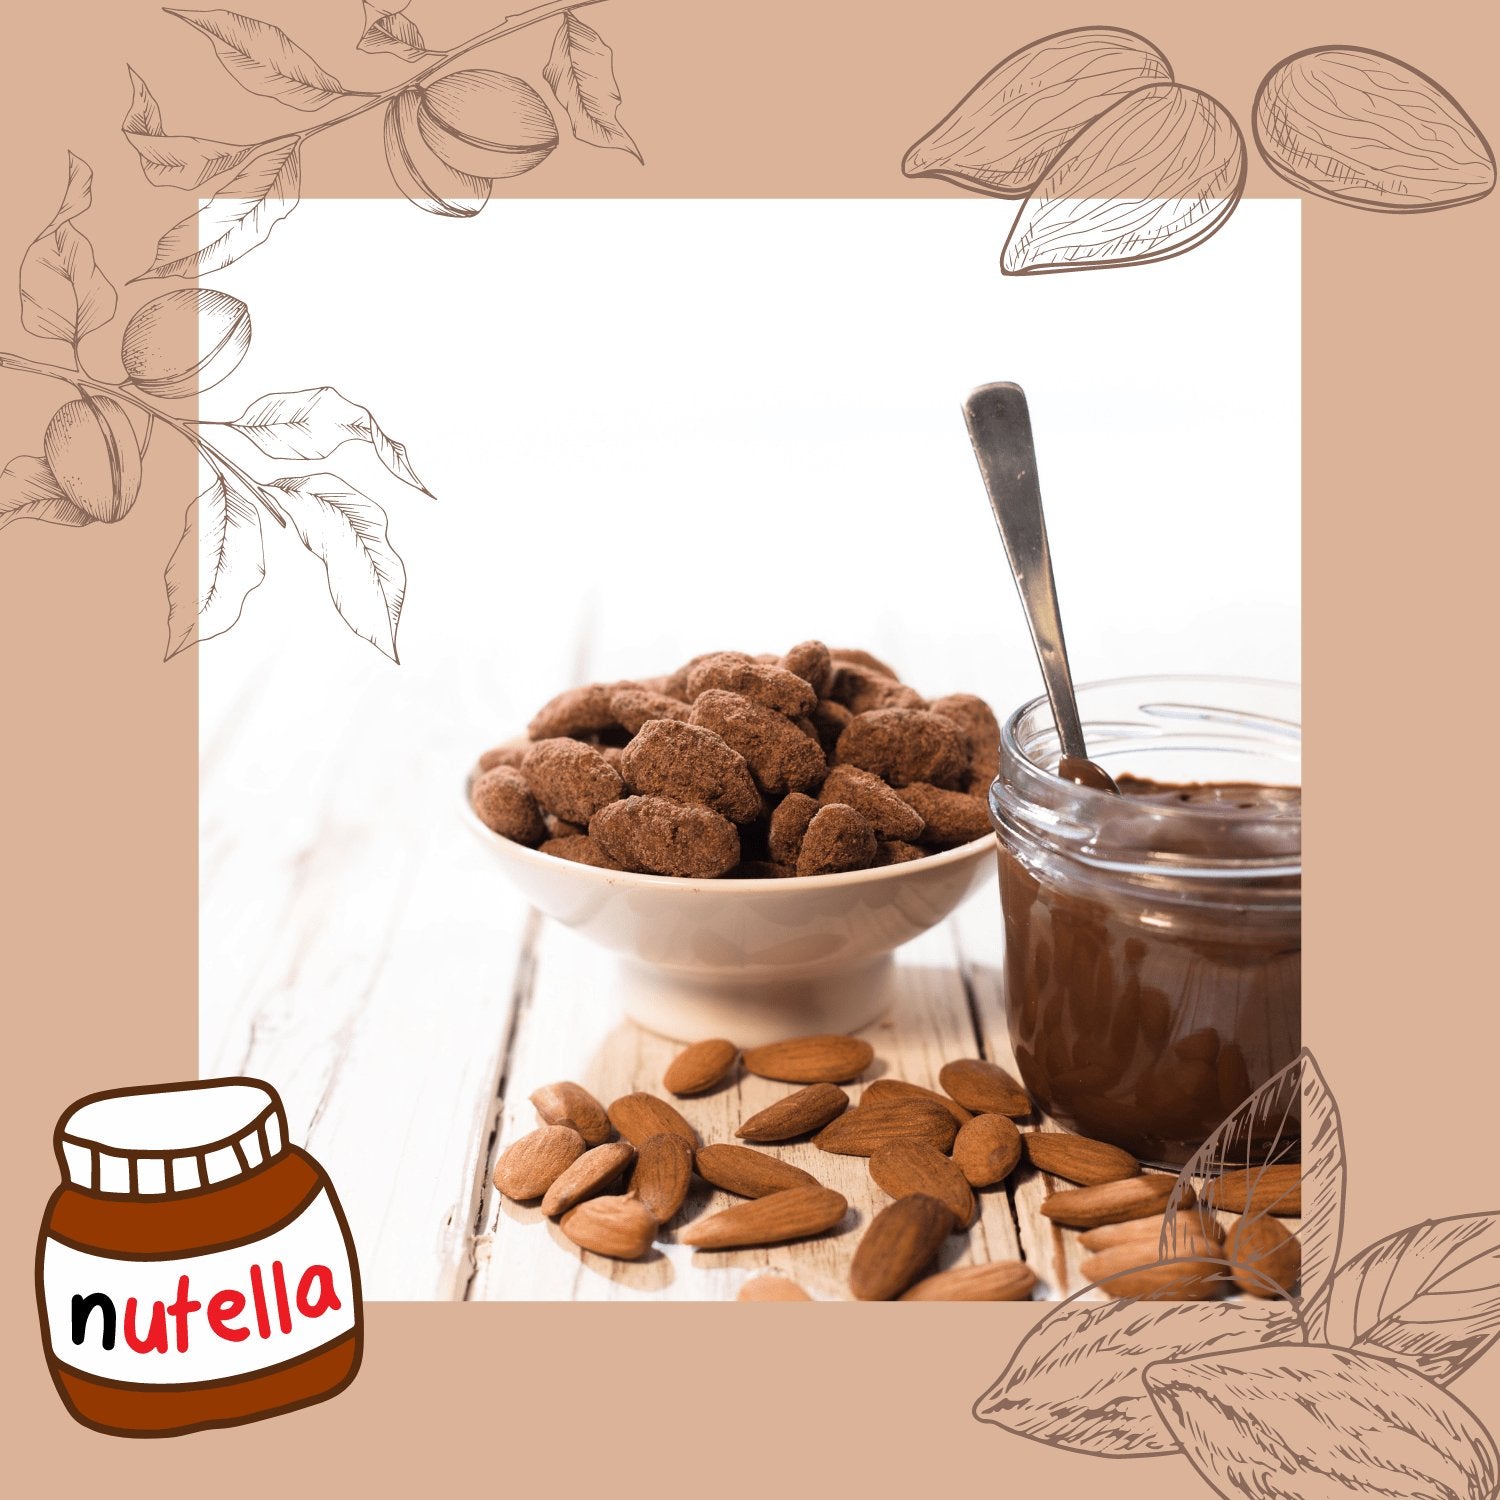 Gebrannte Nutella Mandeln - Jacobs Nussmanufaktur